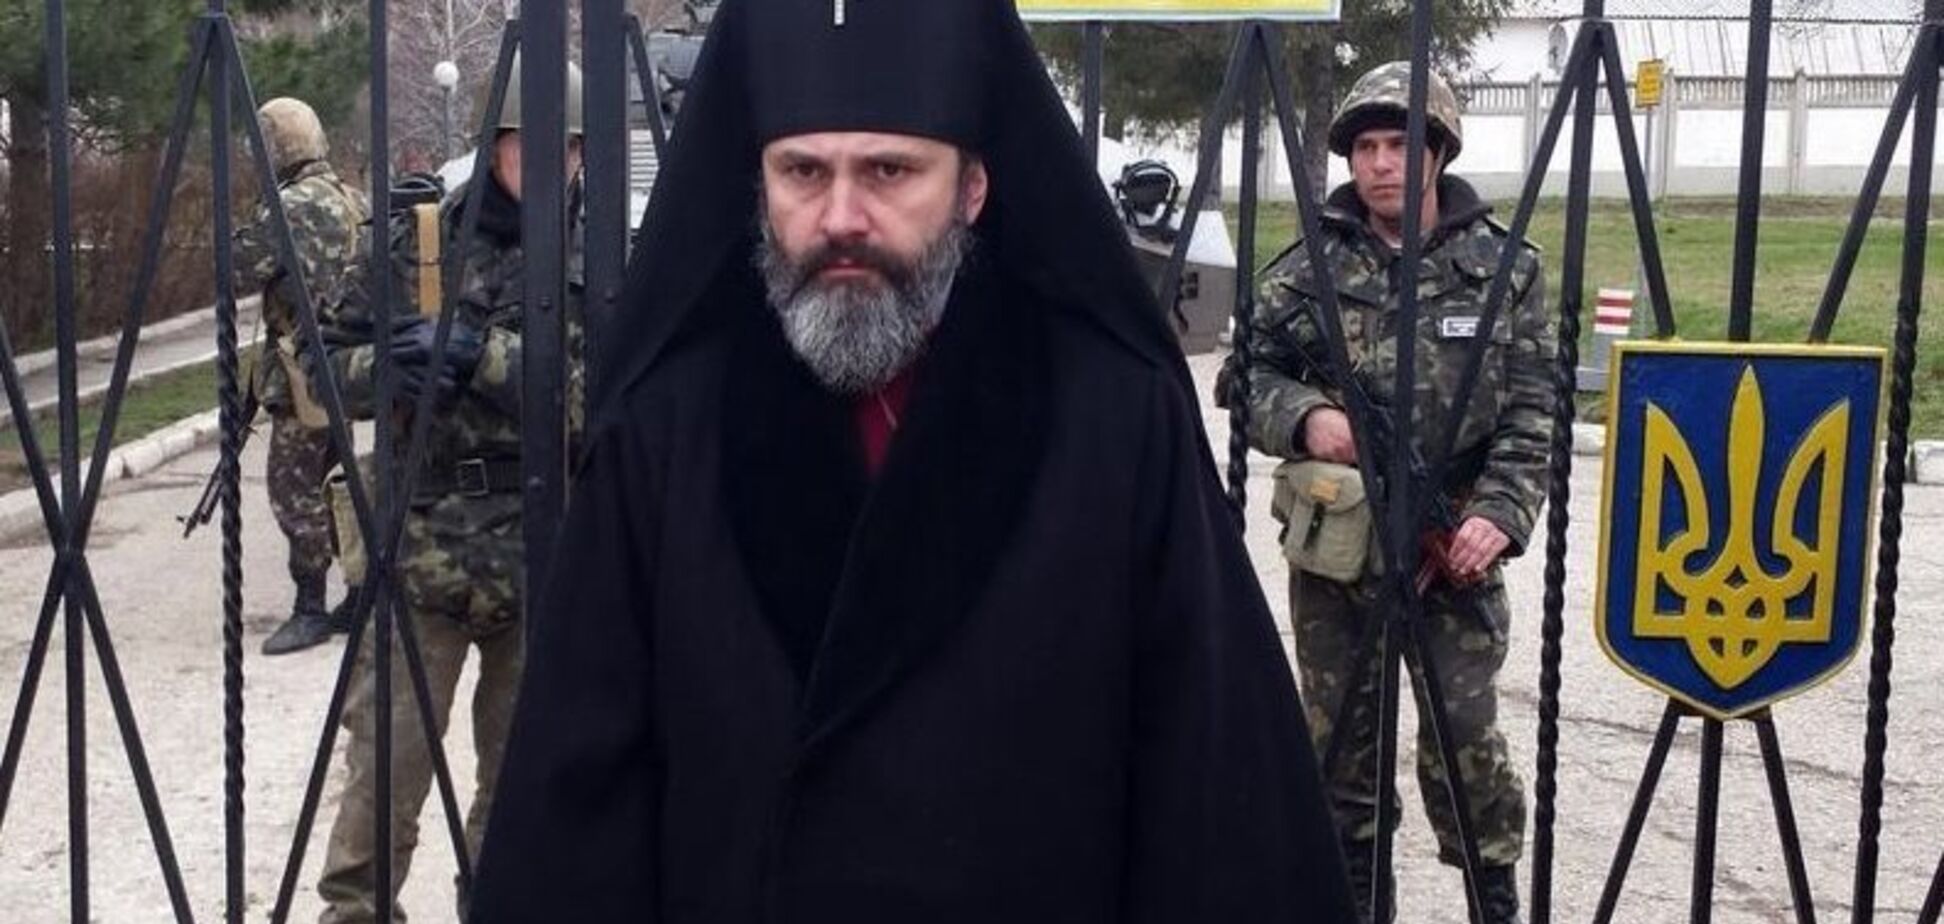 Архієпископ ПЦУ вийшов на зв'язок і розповів, що йому 'шиють' у Криму